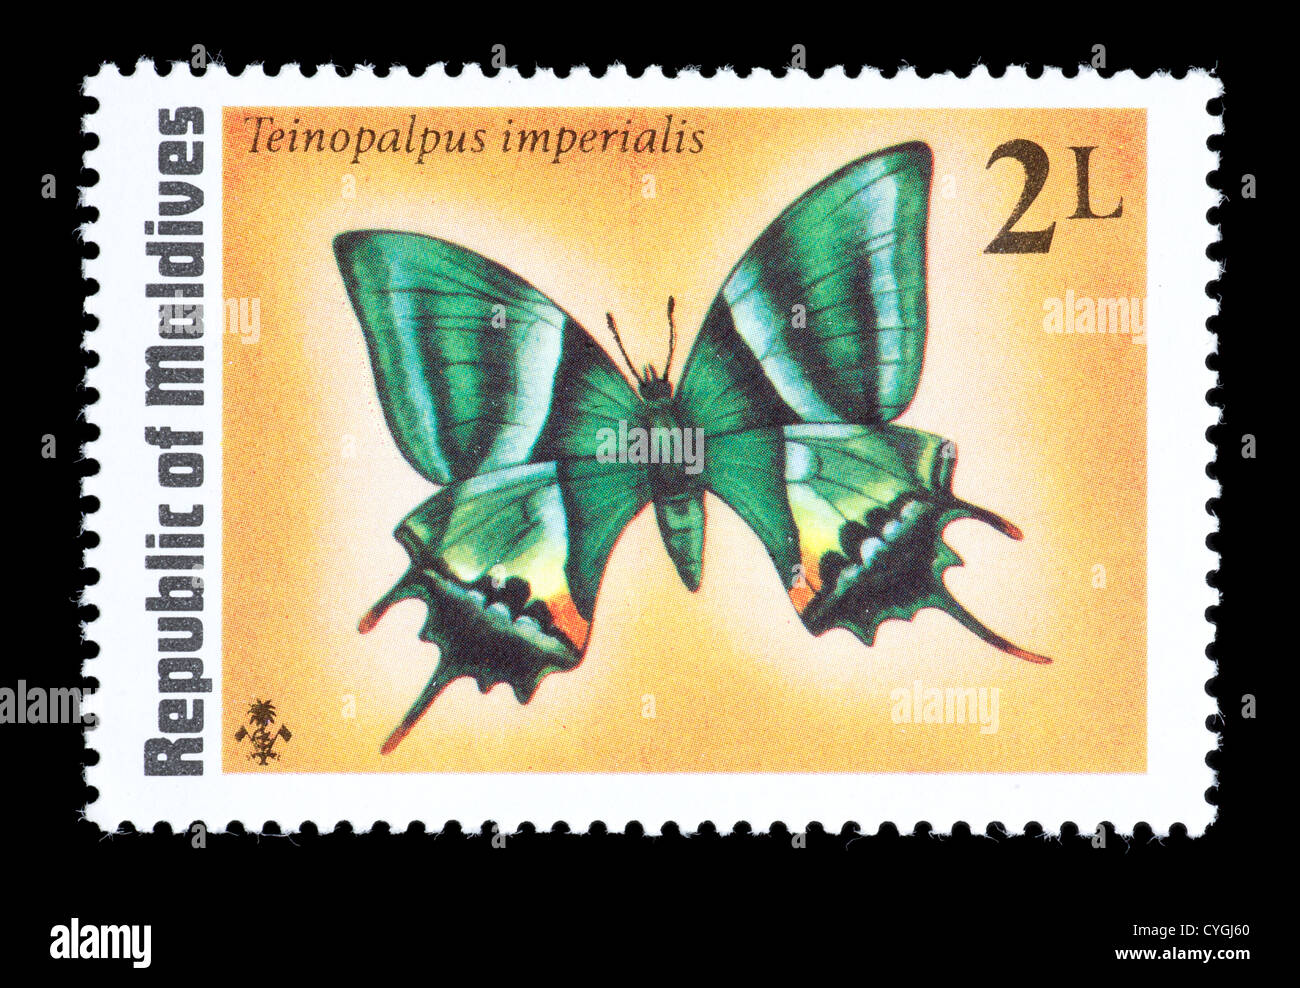 Timbre-poste de la Maldives tropicales représentant un Kaiser-I-Hind butterfly (Teinopalpus imperialis) Banque D'Images